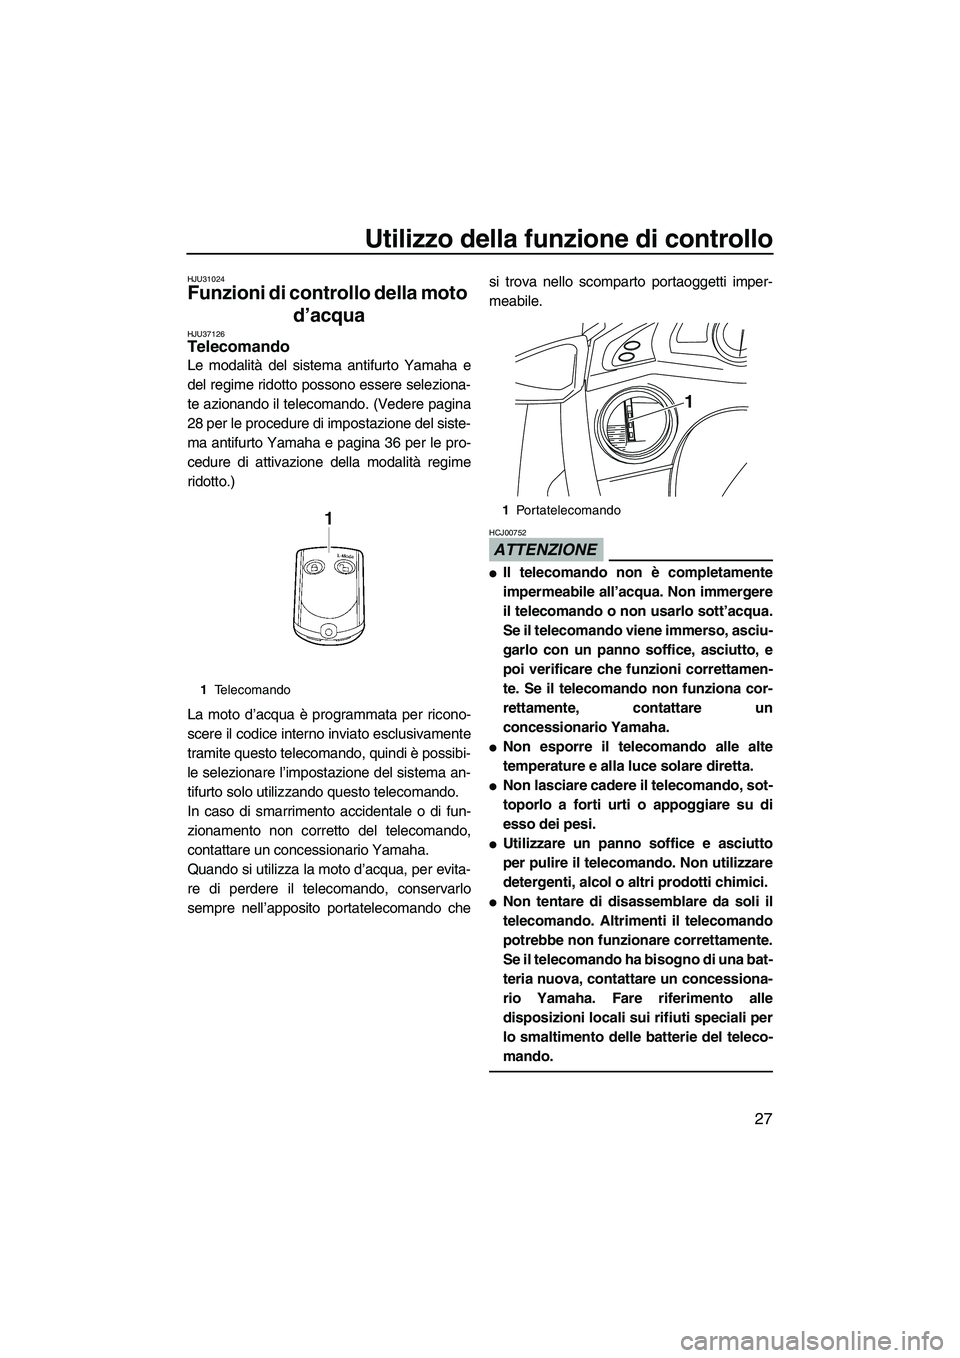 YAMAHA FX SHO 2010  Manuale duso (in Italian) Utilizzo della funzione di controllo
27
HJU31024
Funzioni di controllo della moto 
d’acqua 
HJU37126Telecomando 
Le modalità del sistema antifurto Yamaha e
del regime ridotto possono essere selezio